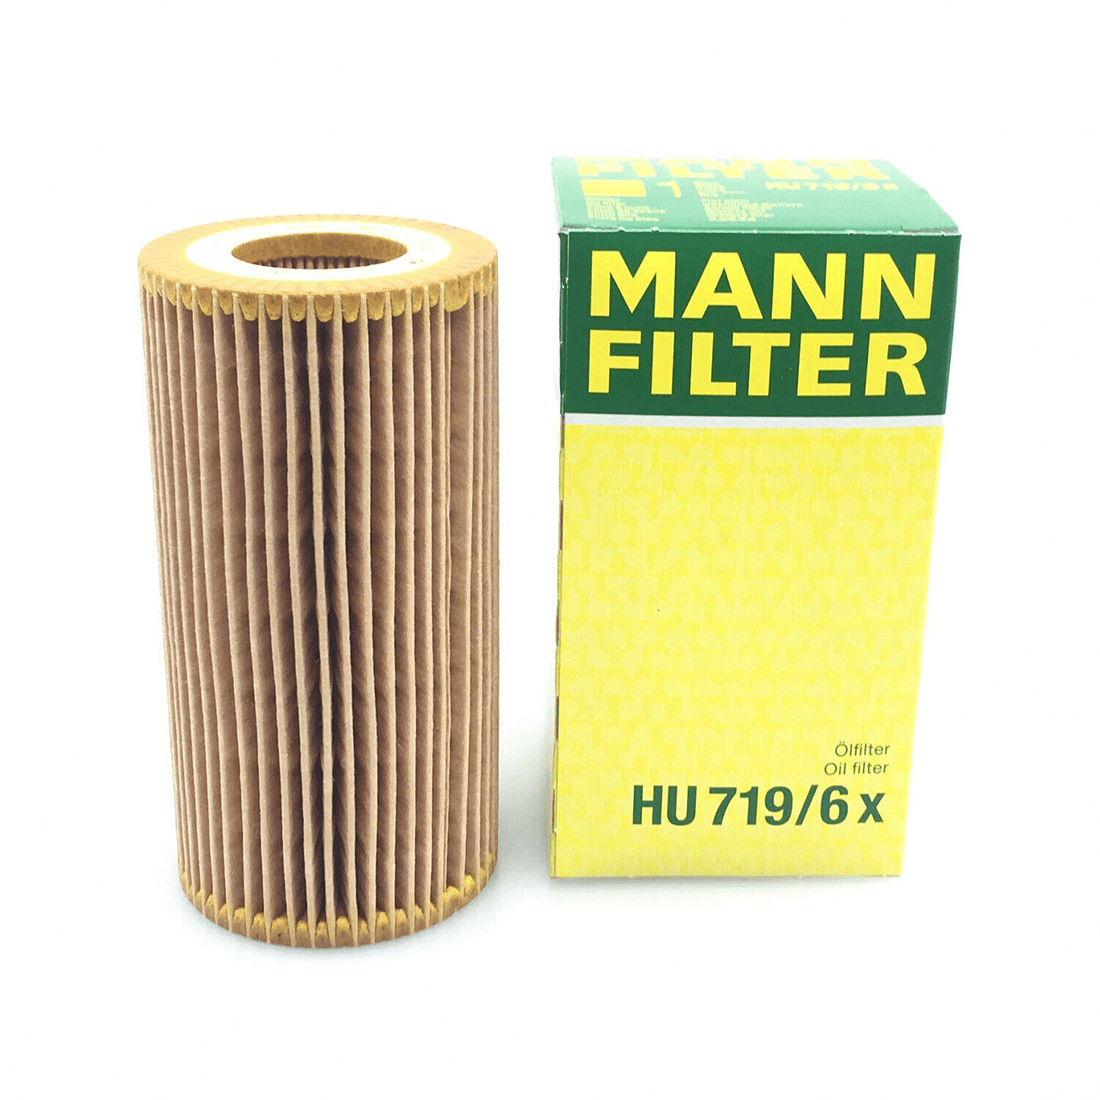 Fuel Filter Mann PU8021 For Audi A3 Quattro VW Beetle Golf Jetta 2.0 L4 Turbo  FI